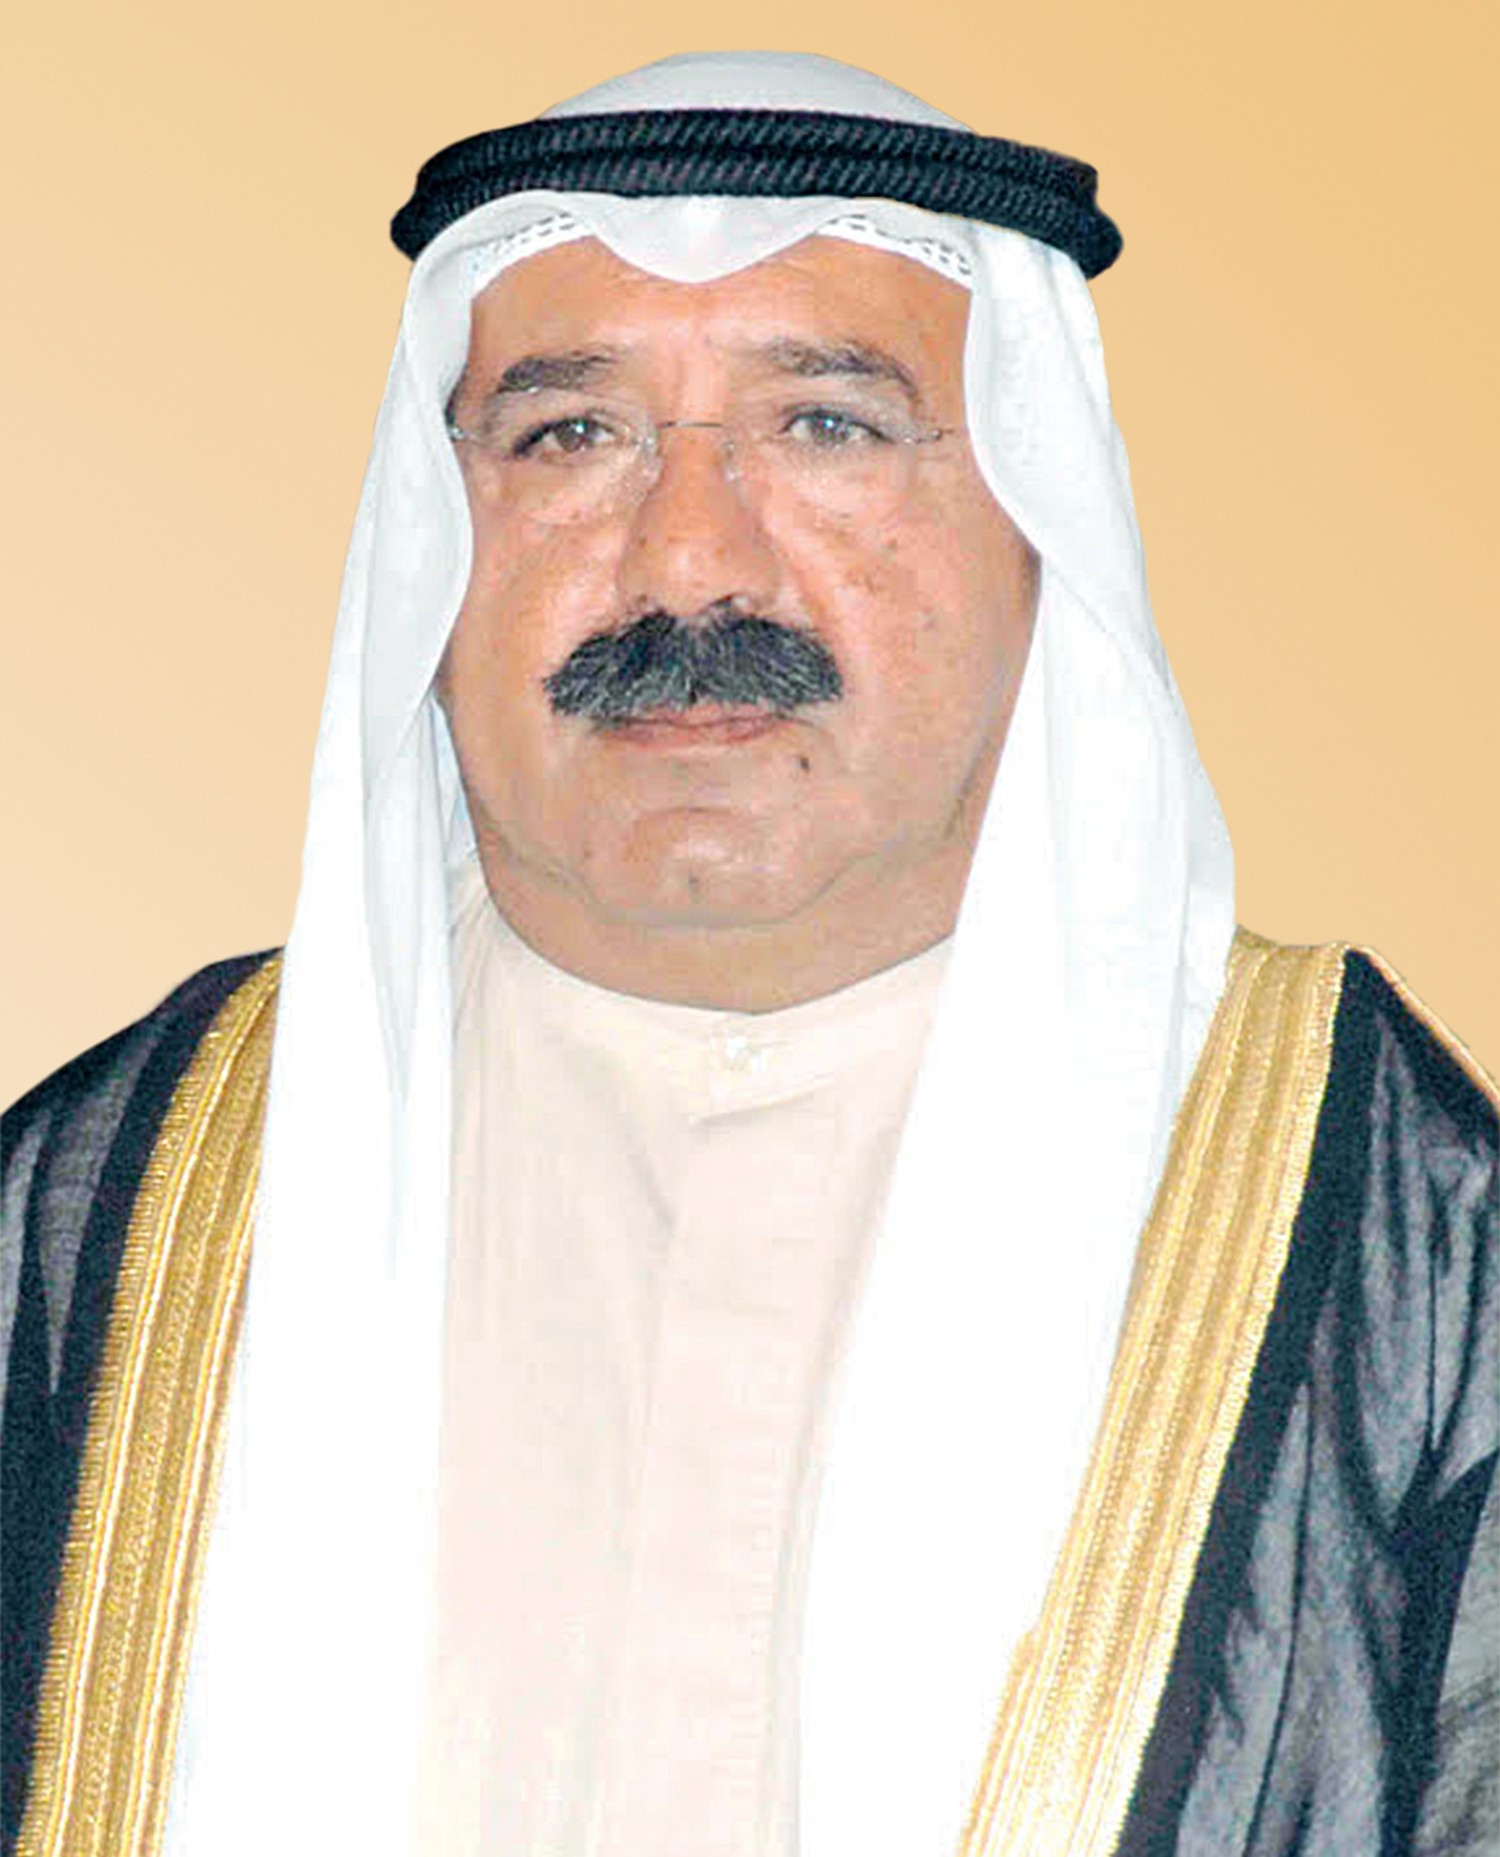 Kuwait First Deputy Prime Minister and Minister of Defense Sheikh Nasser Sabah Al-Ahmad Al-Sabah